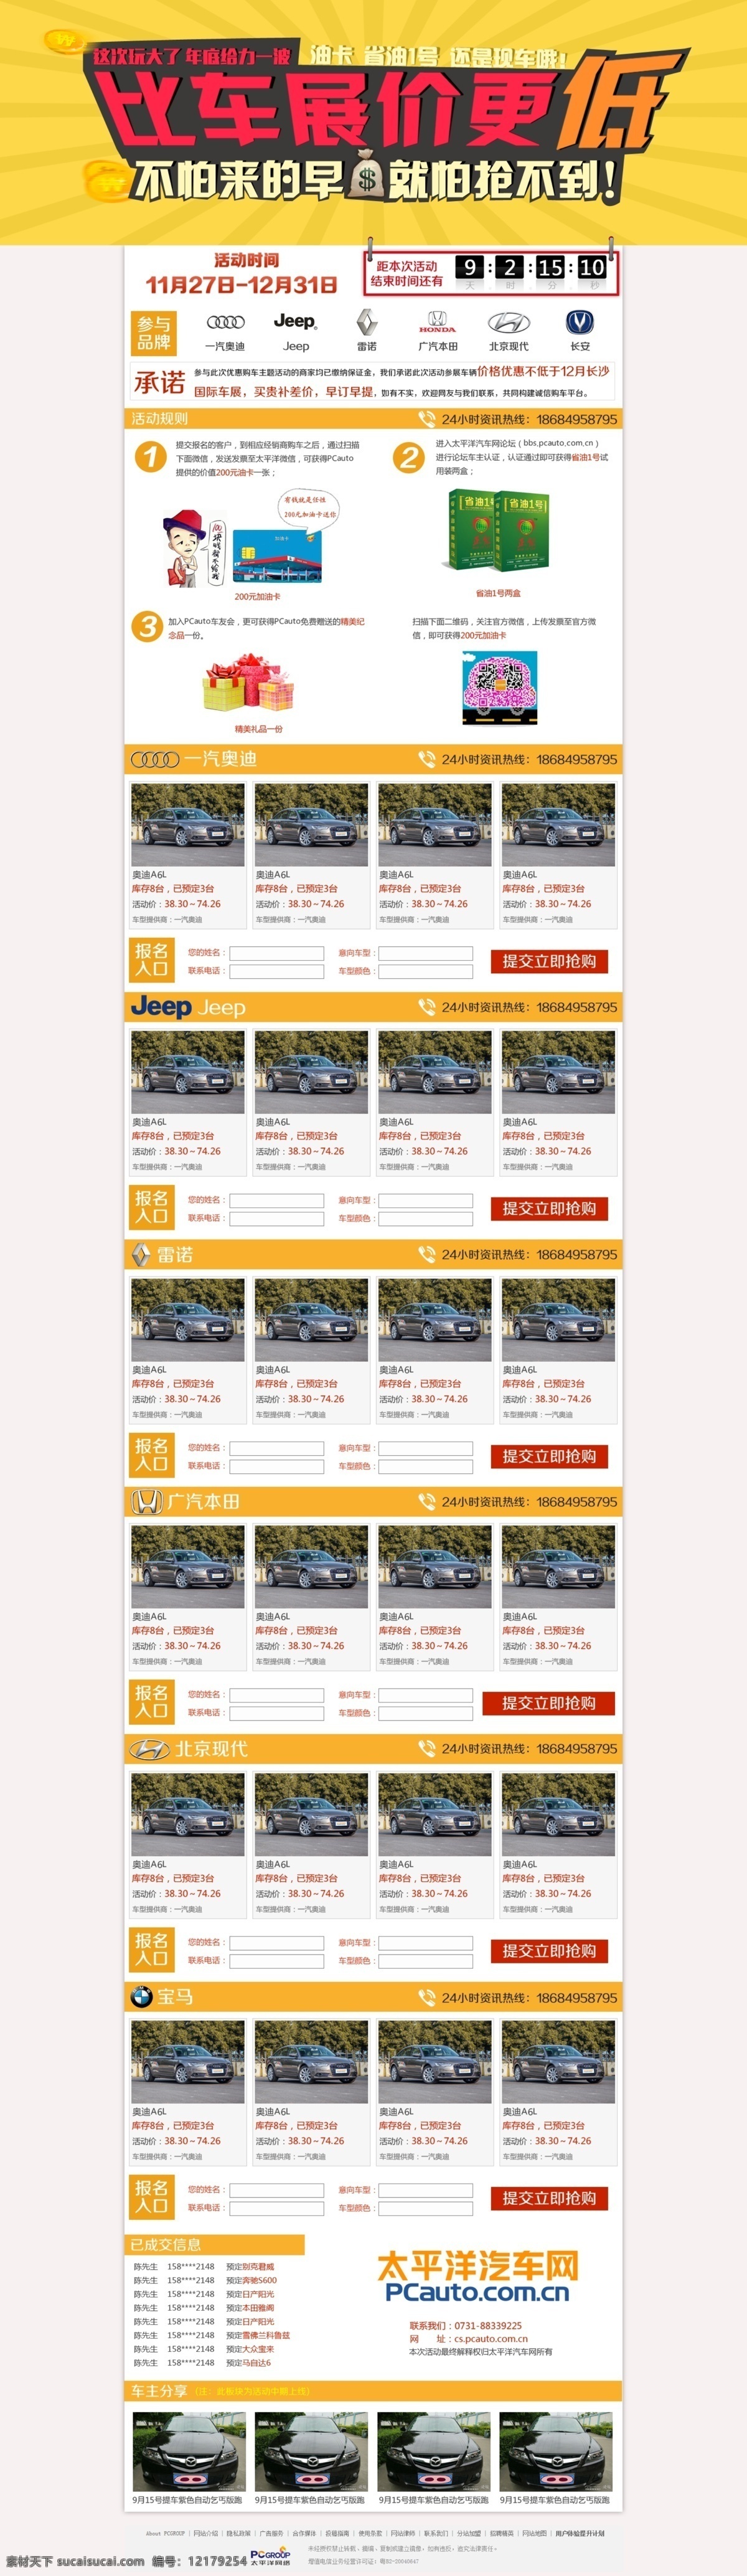 车展 优惠 购车 活动 原创设计 原创网页设计